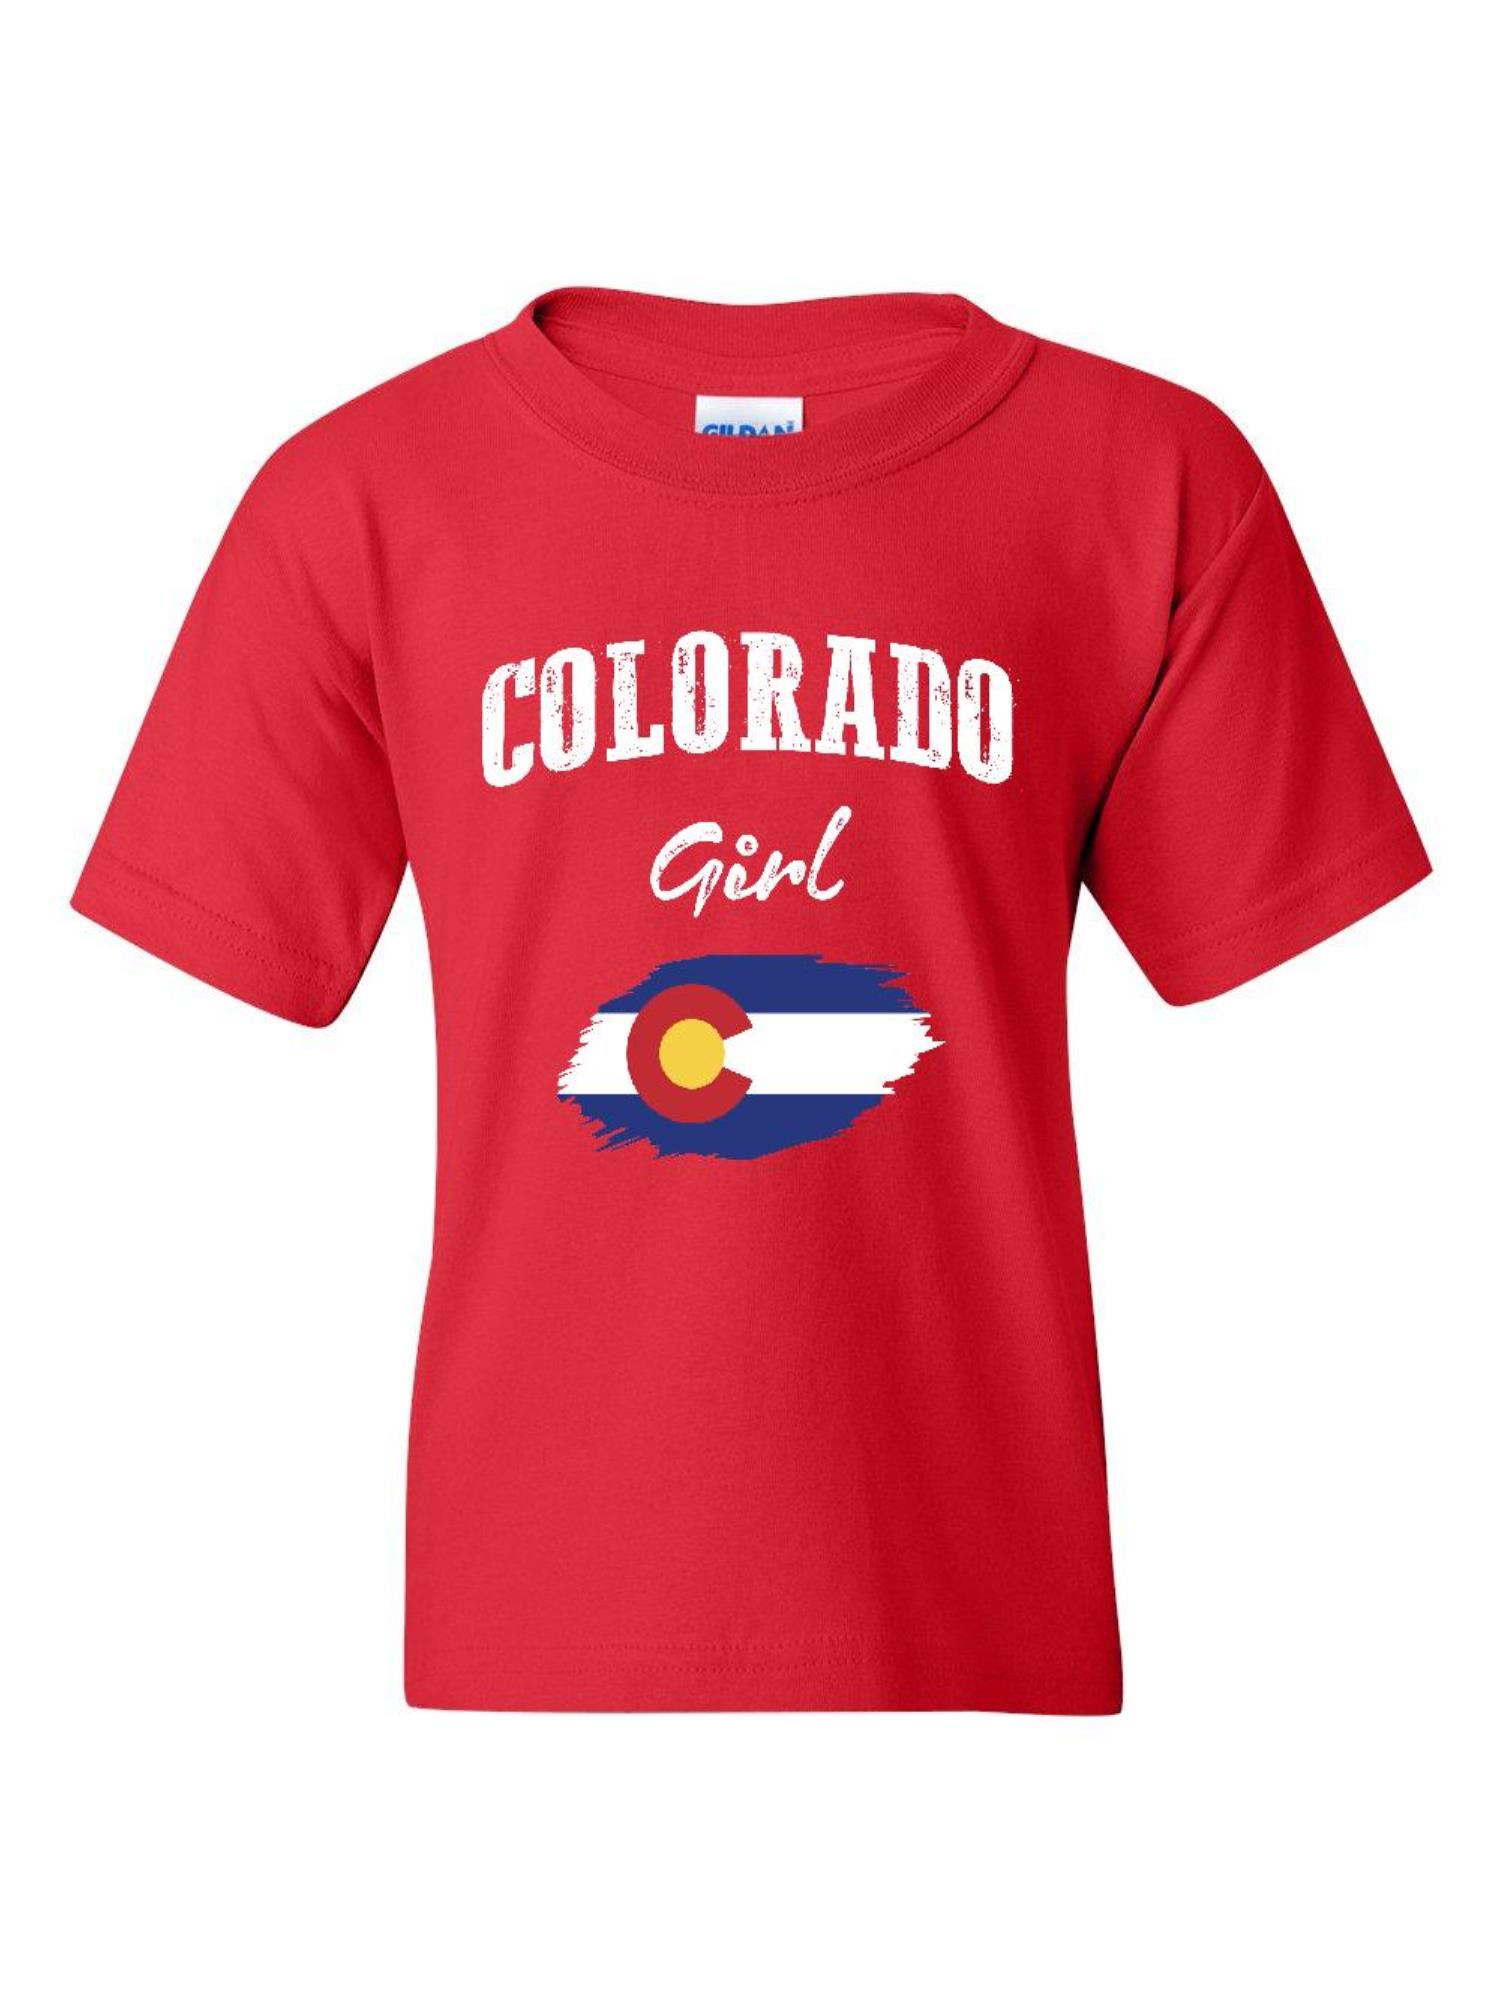 NIB - Big Girls T-Shirts and Tank Tops - Colorado Girl - image 1 of 5